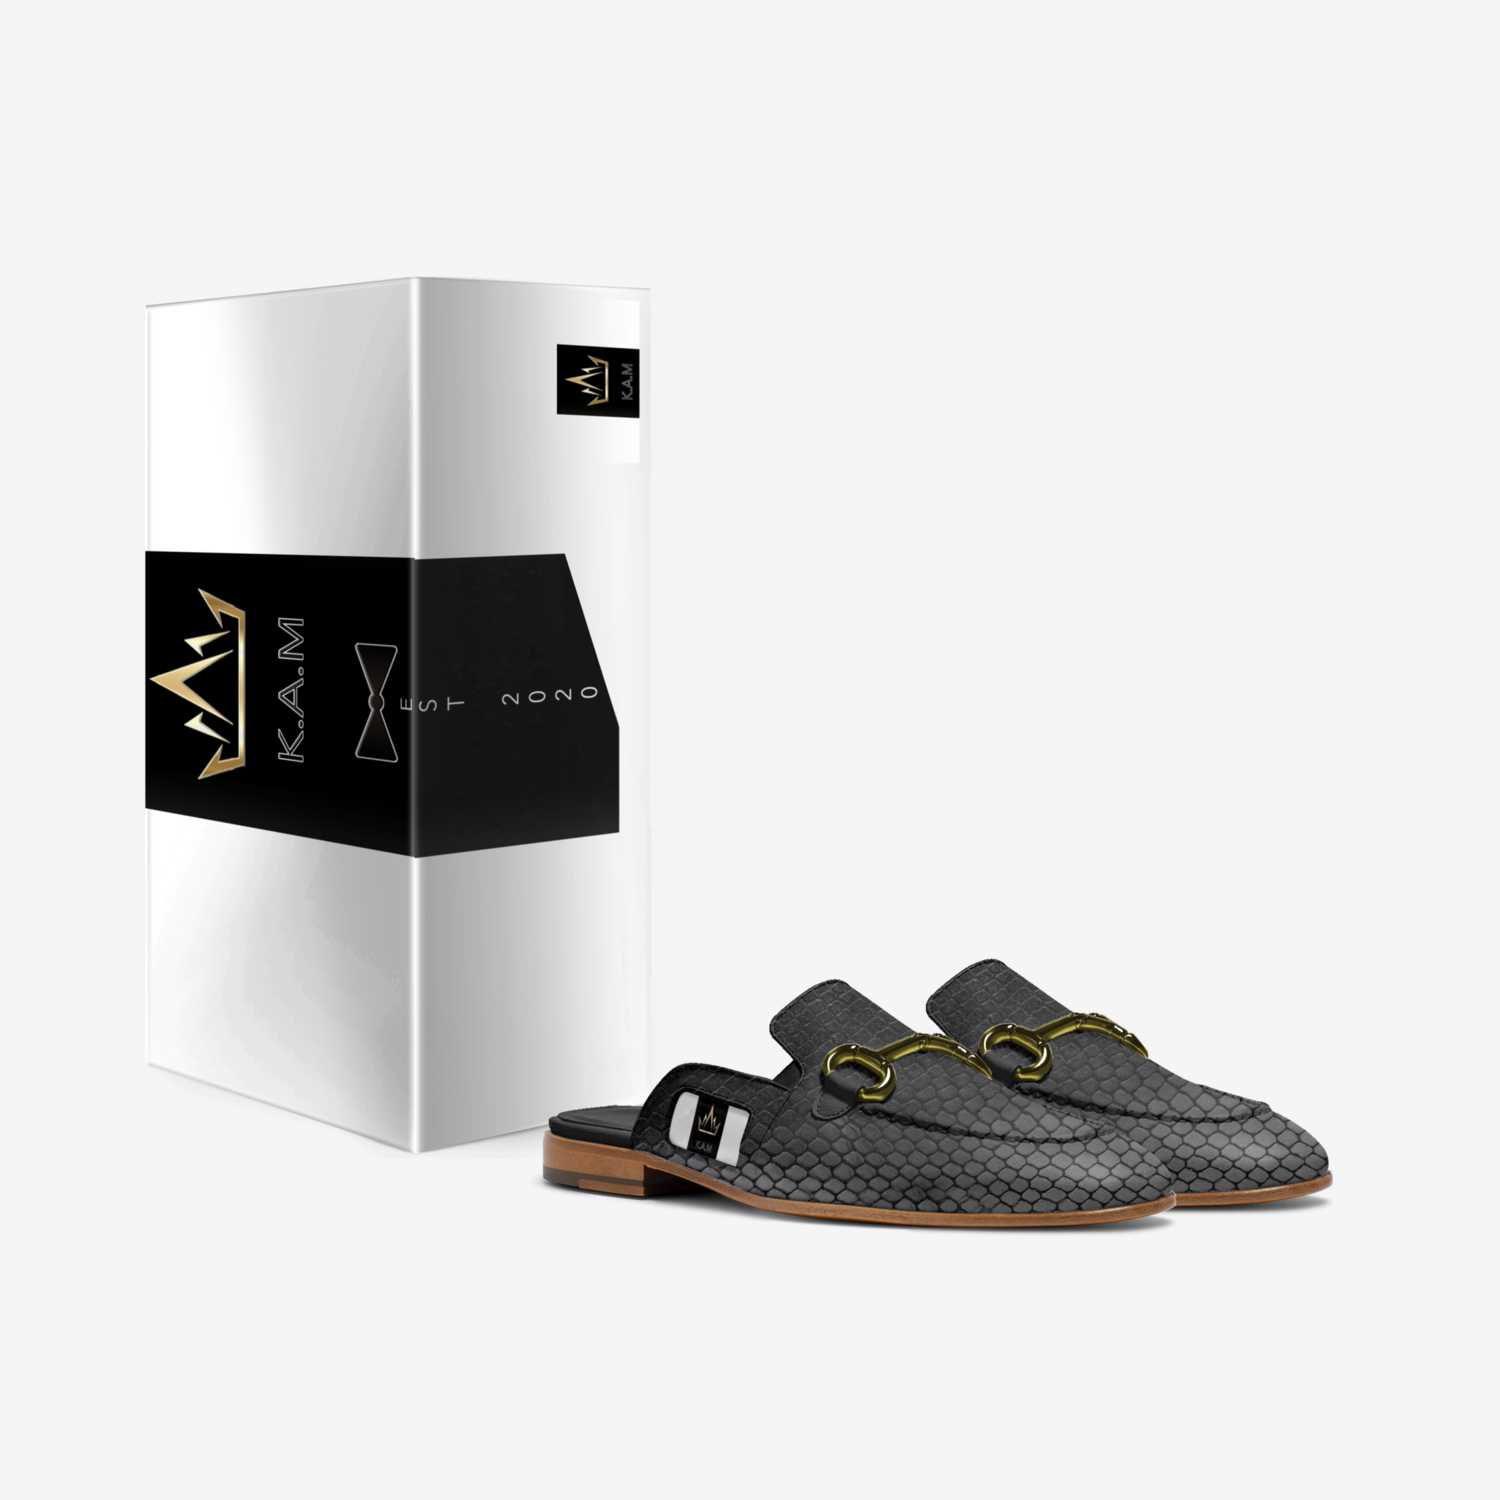 E.D.H custom made in Italy shoes by K.a.m 2020 | Box view